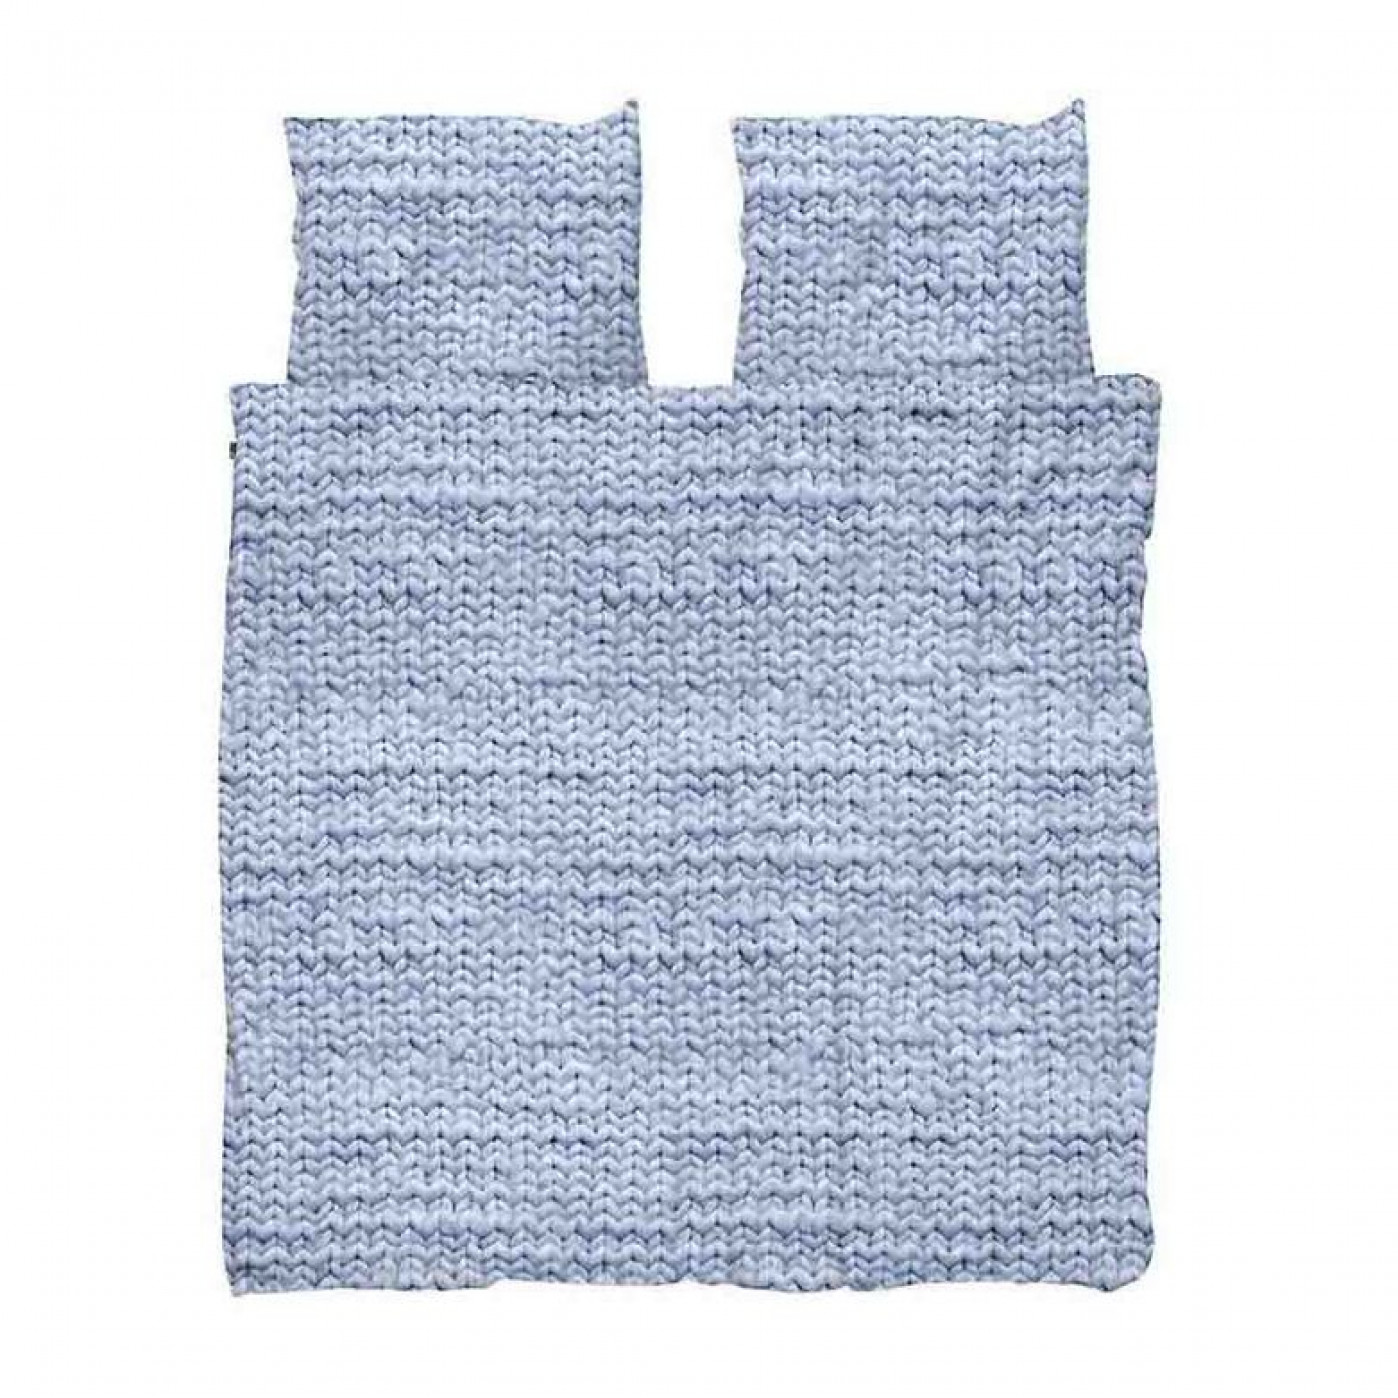 Комплект постельного белья Косичка синяя фланель 200 х 220 см.